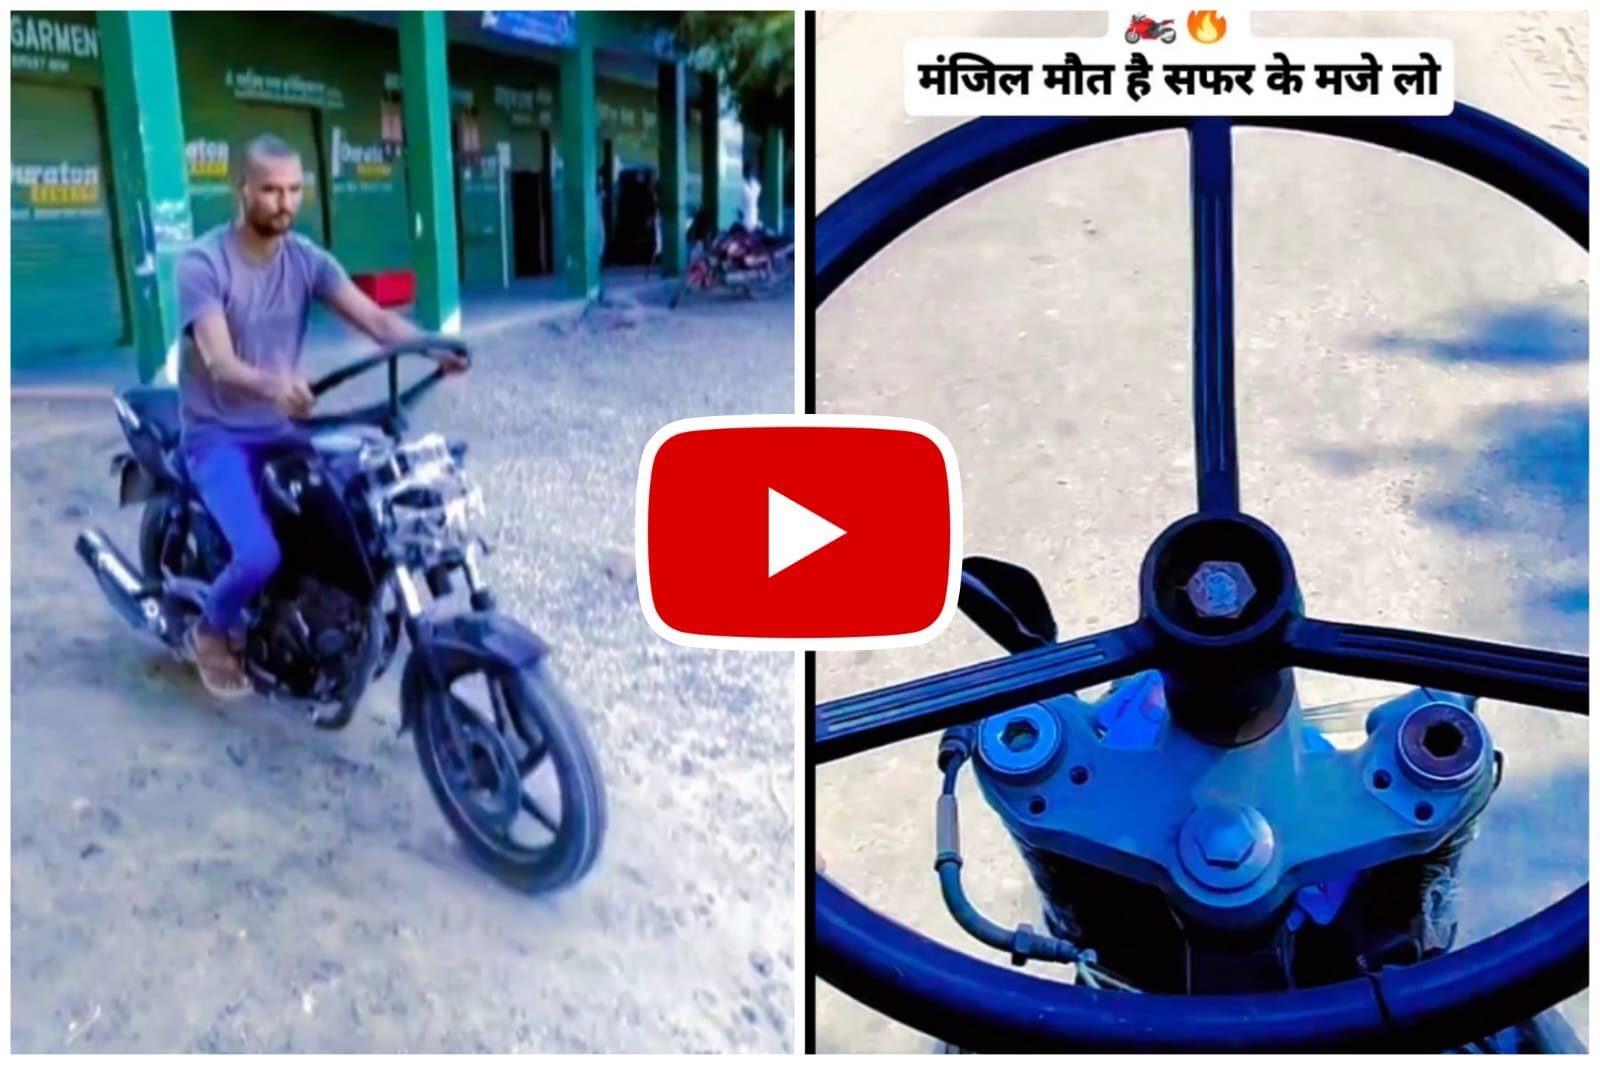 Bike Ka Jugaad - Man fitted tractor steering in bike